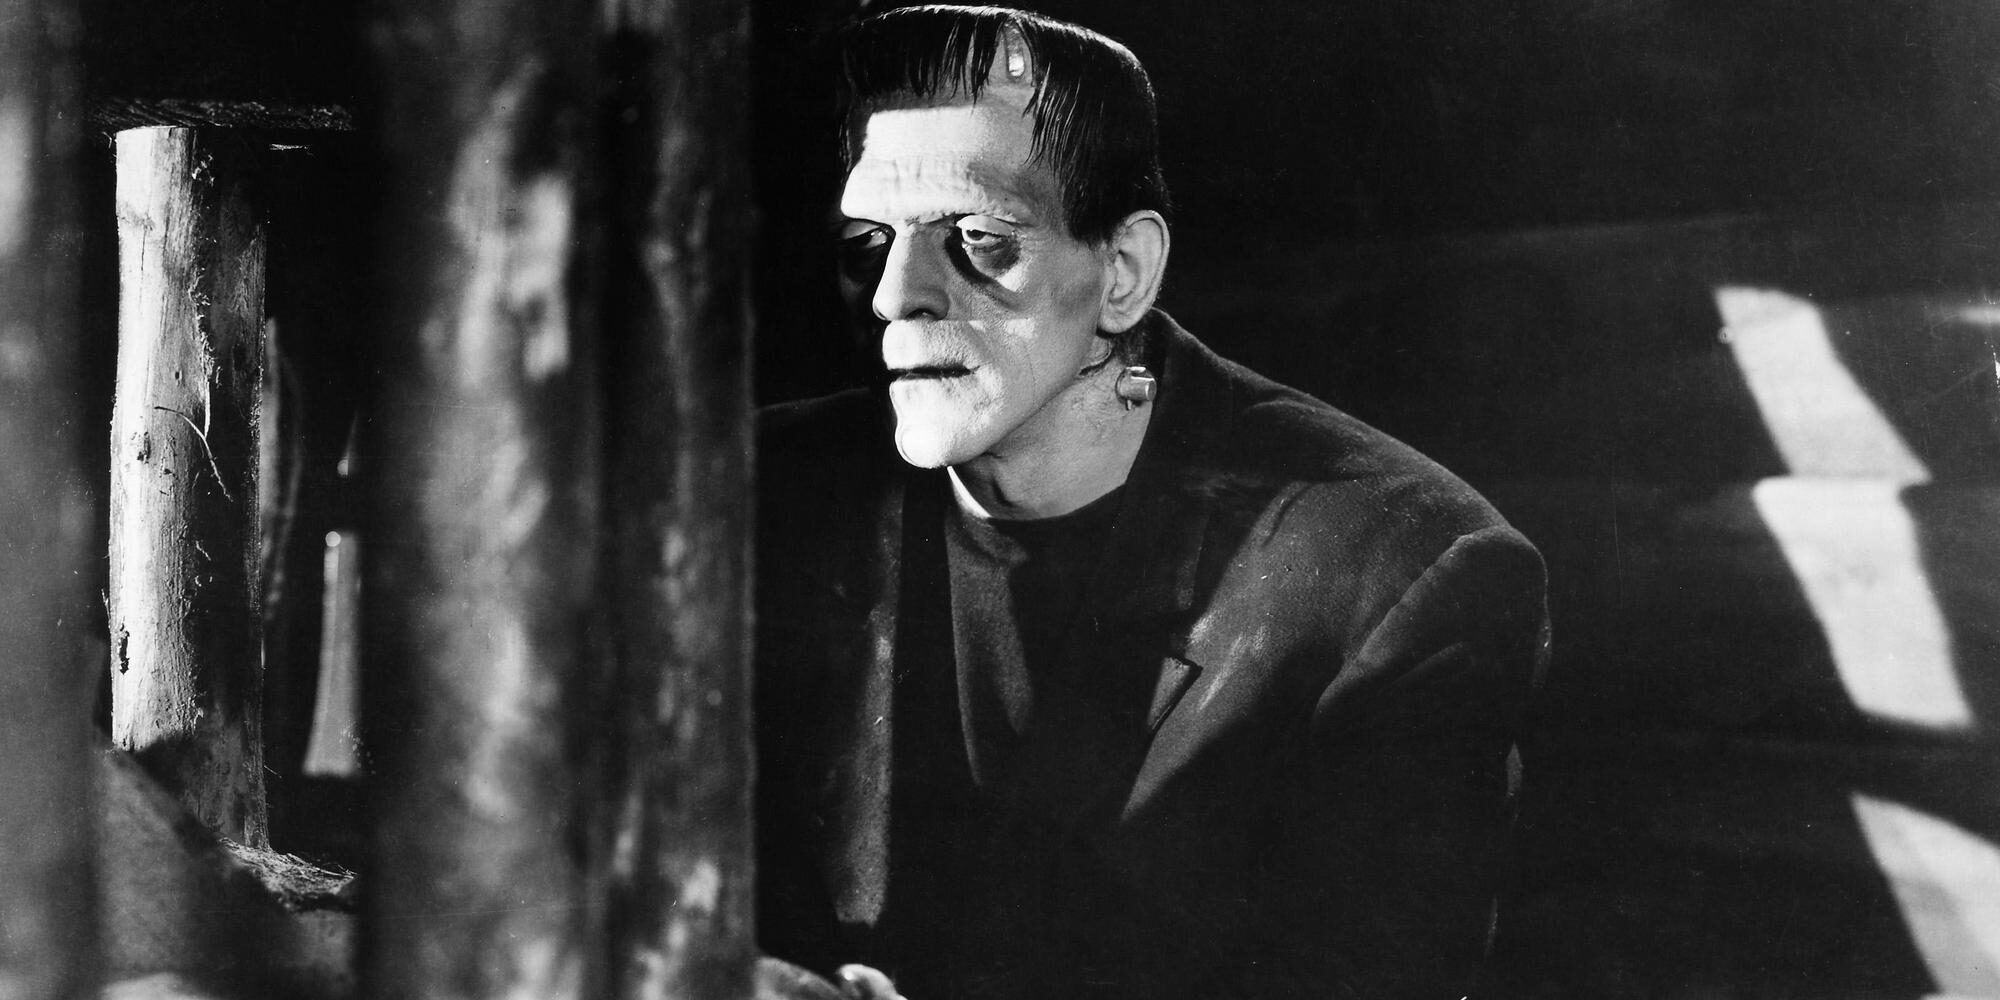 FF6M2G FRANKENSTEIN, 1931. /nBoris Karloff as the monster in 'Frankenstein,' 1931.